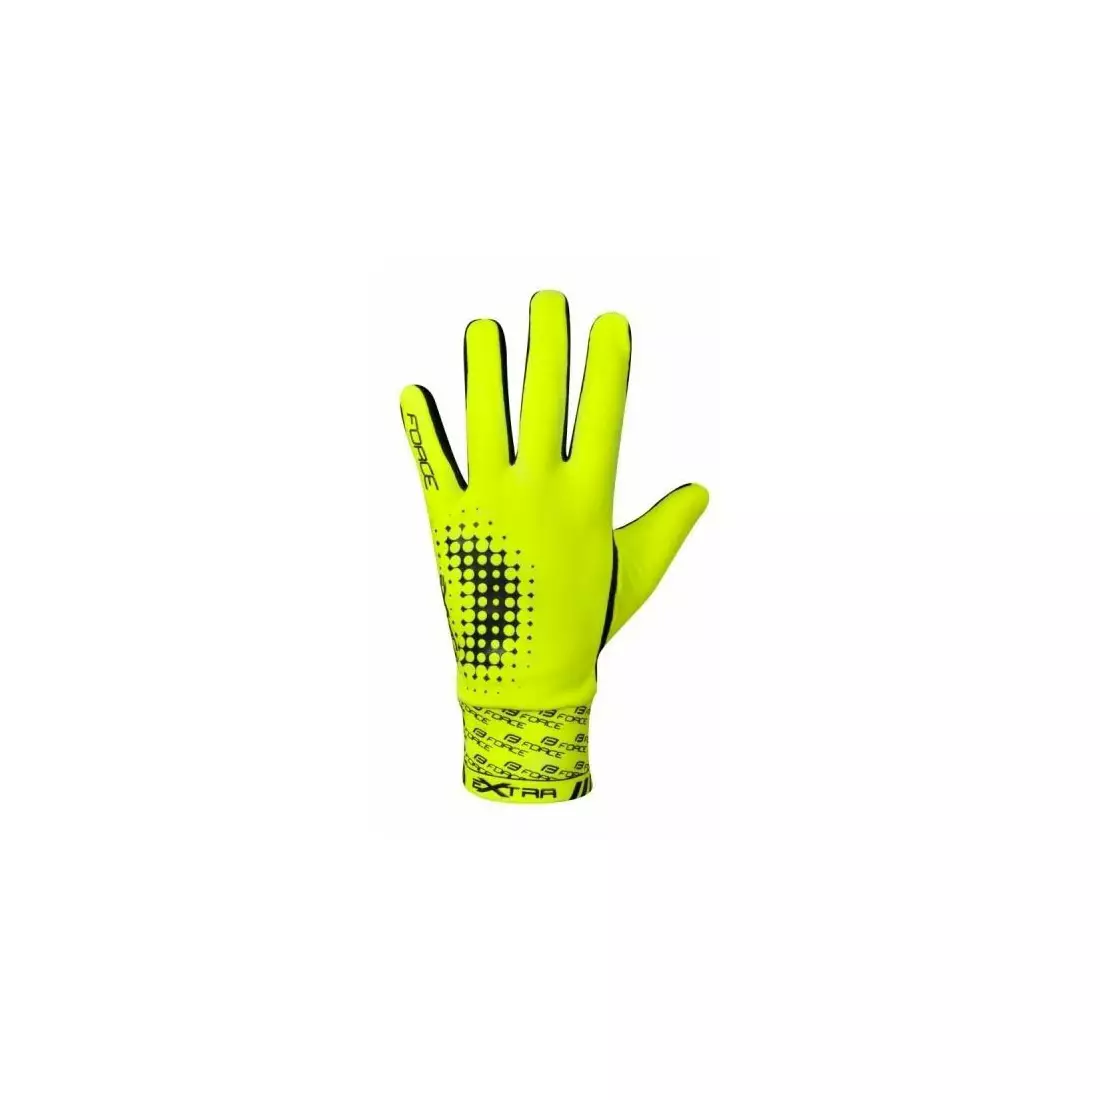 FORCE EXTRA mănuși de ciclism - licra izolată - fluor galben